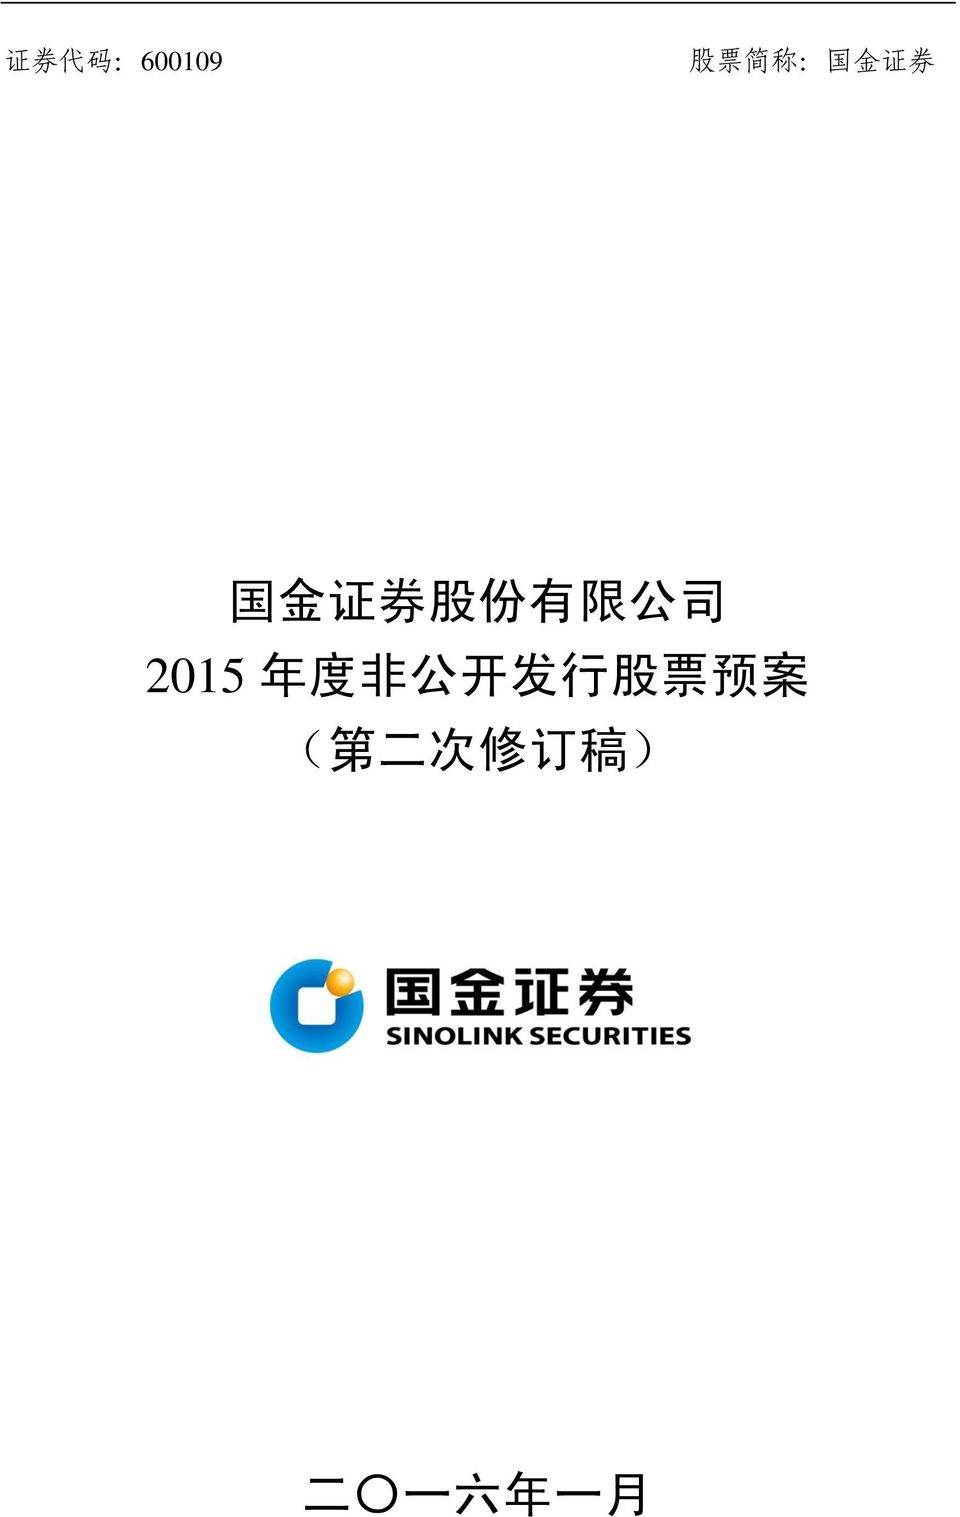 2015 年 度 非 公 开 发 行 股 票 预 案